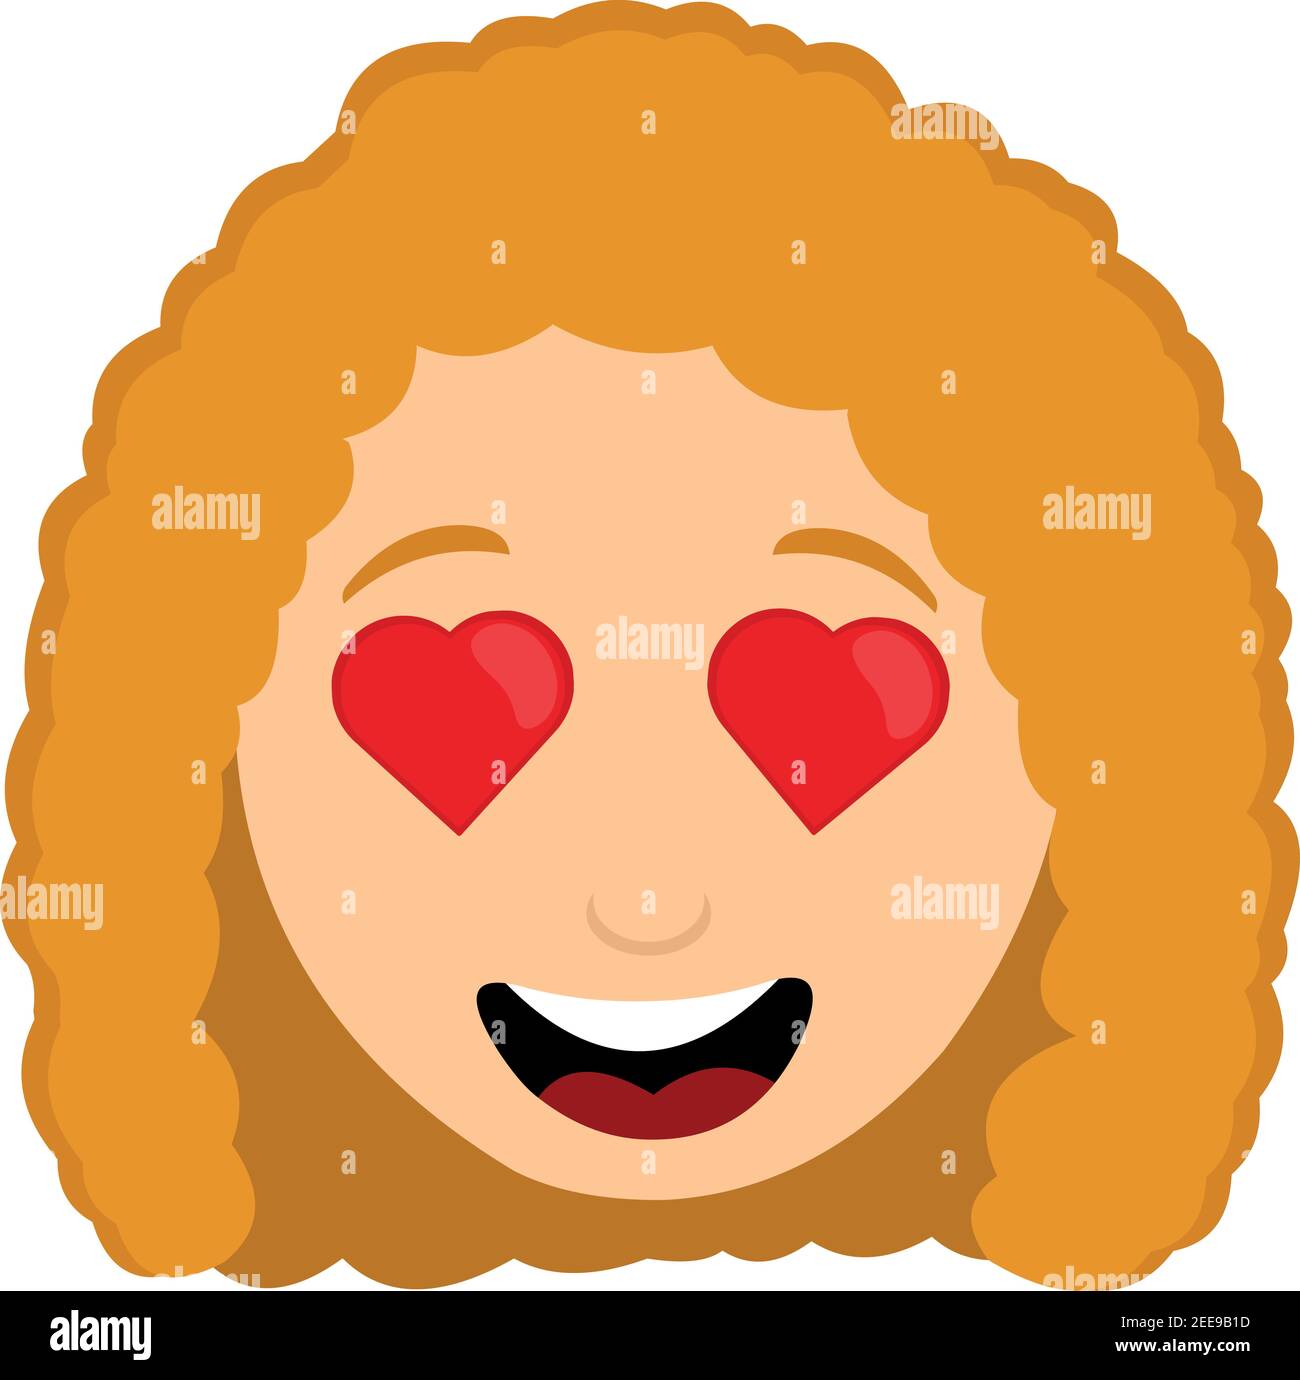 Emoticon vettoriale illustrazione della testa di una donna con i capelli rossi e occhi a forma di cuore Illustrazione Vettoriale